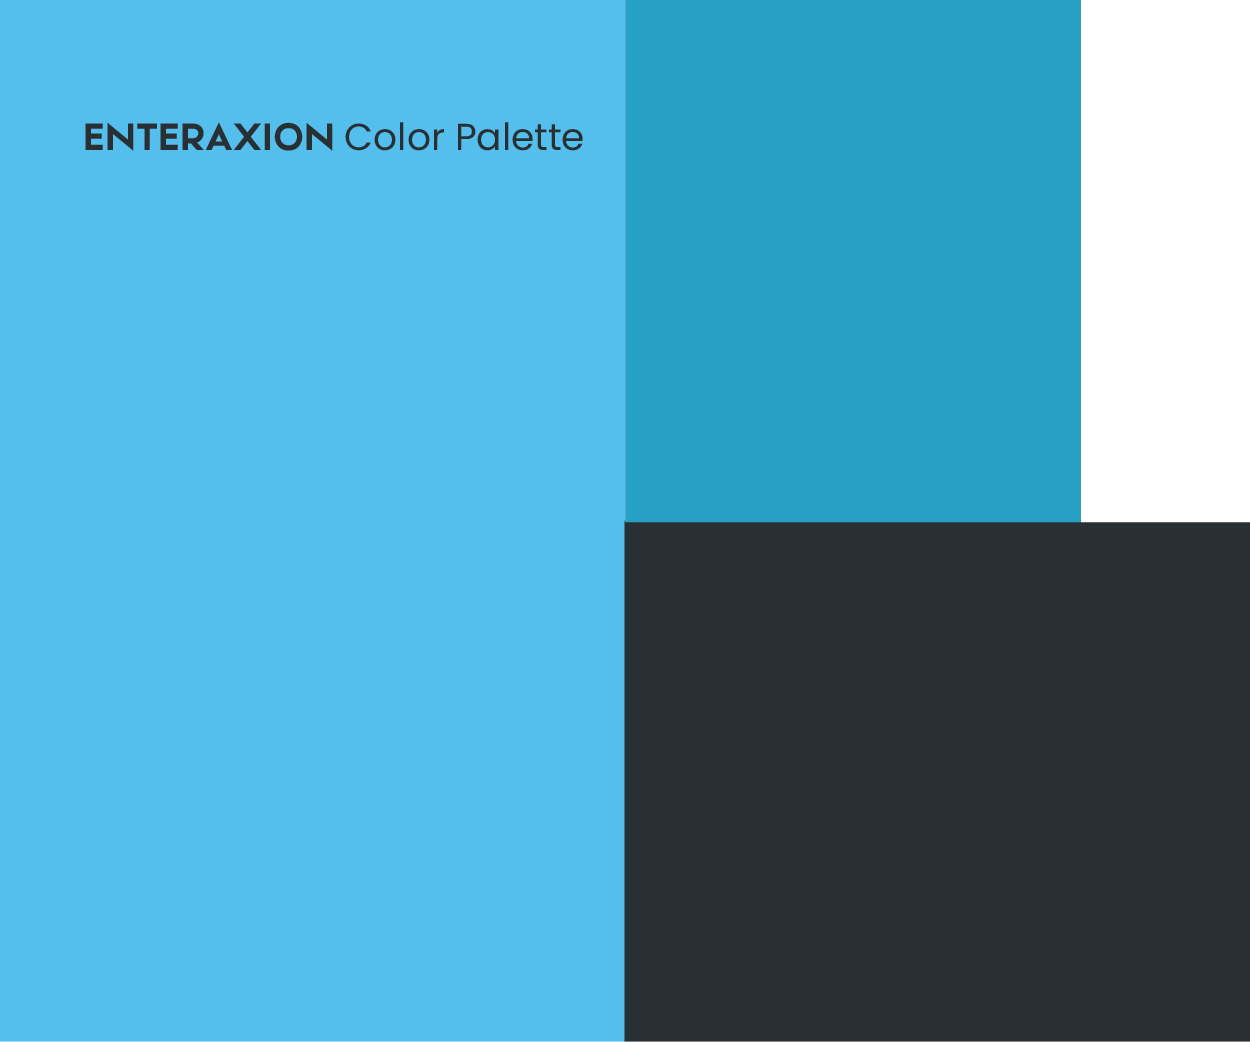 Enteraxion a software development firm Color Palette Image